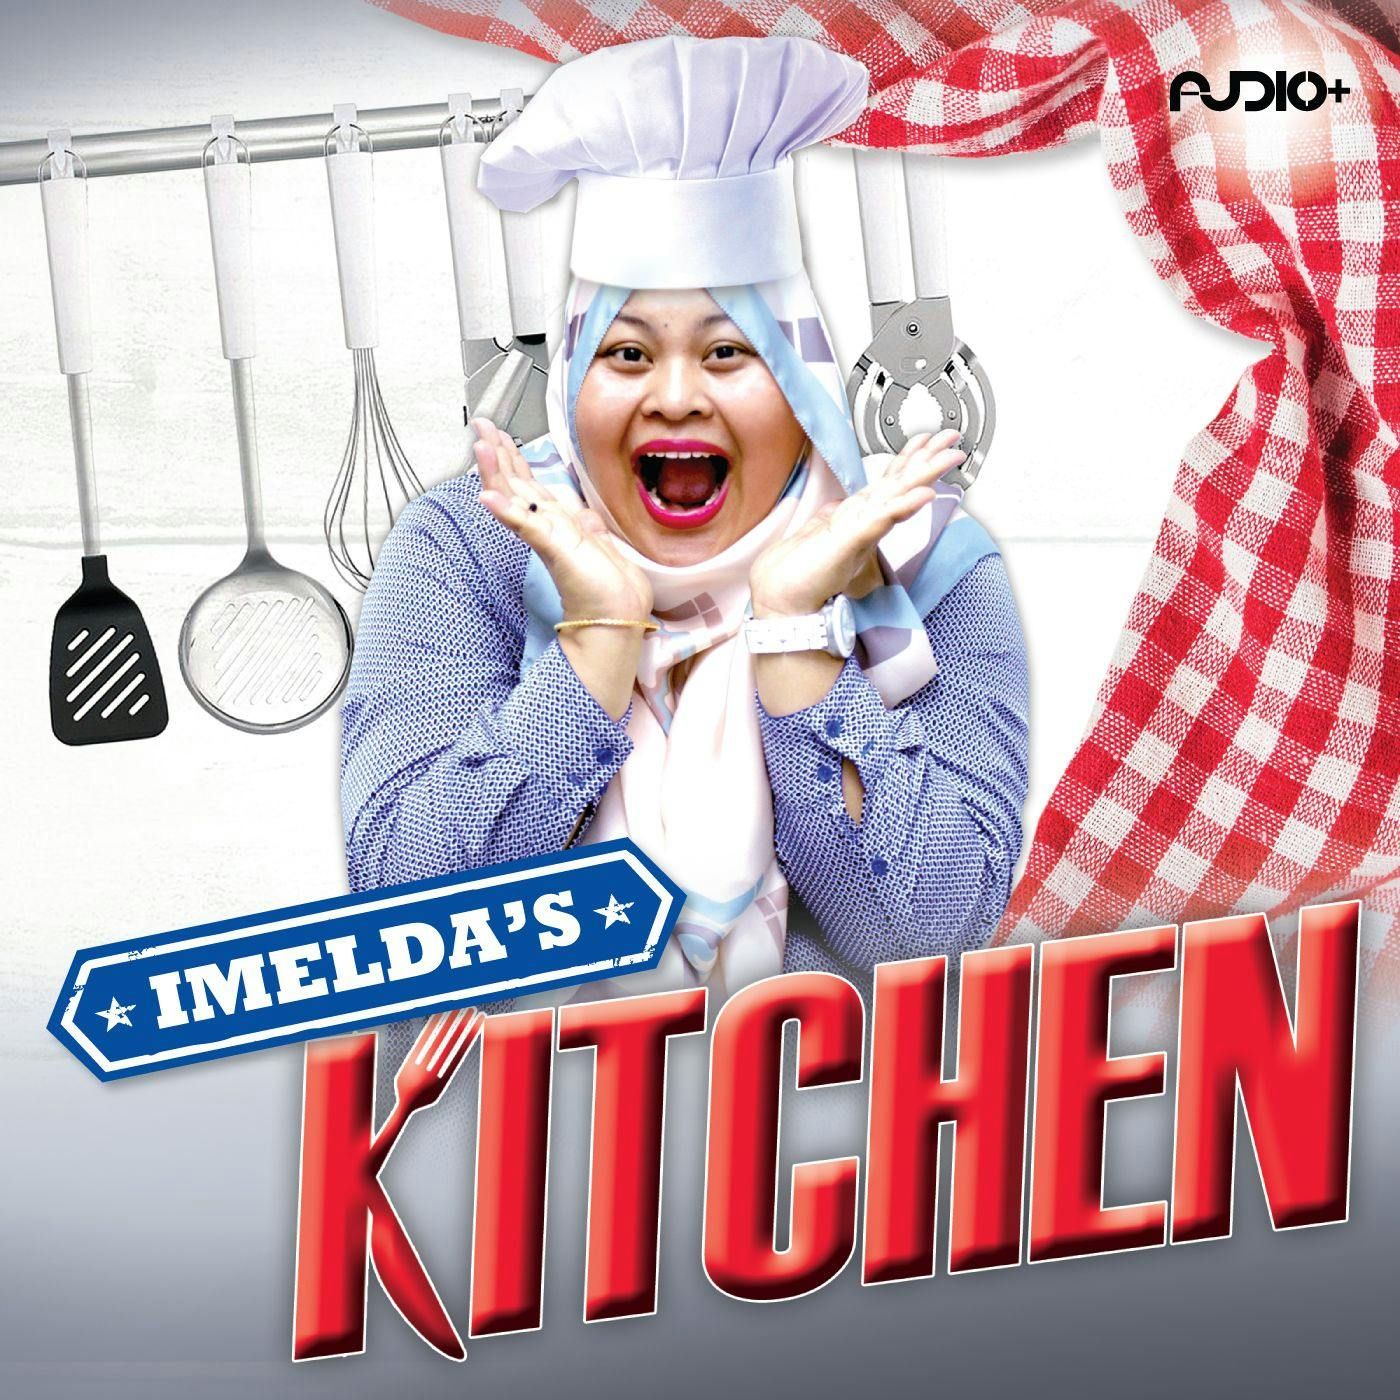 Episode 07 - Meals For Models : Imelda's Kitchen